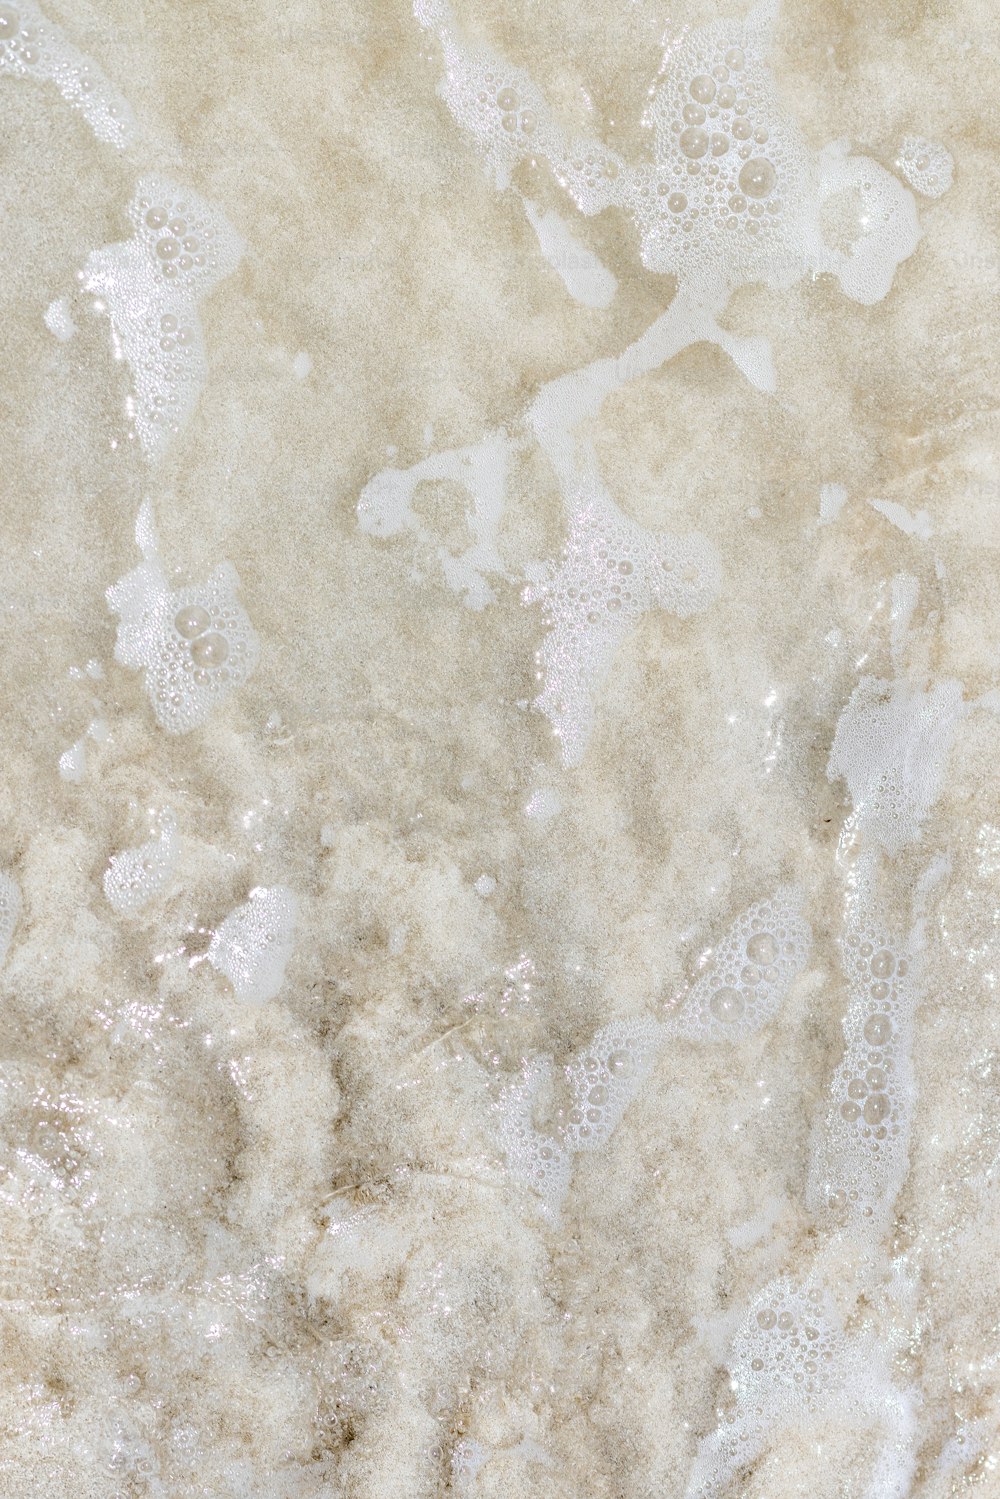 um close up de uma textura de mármore branco